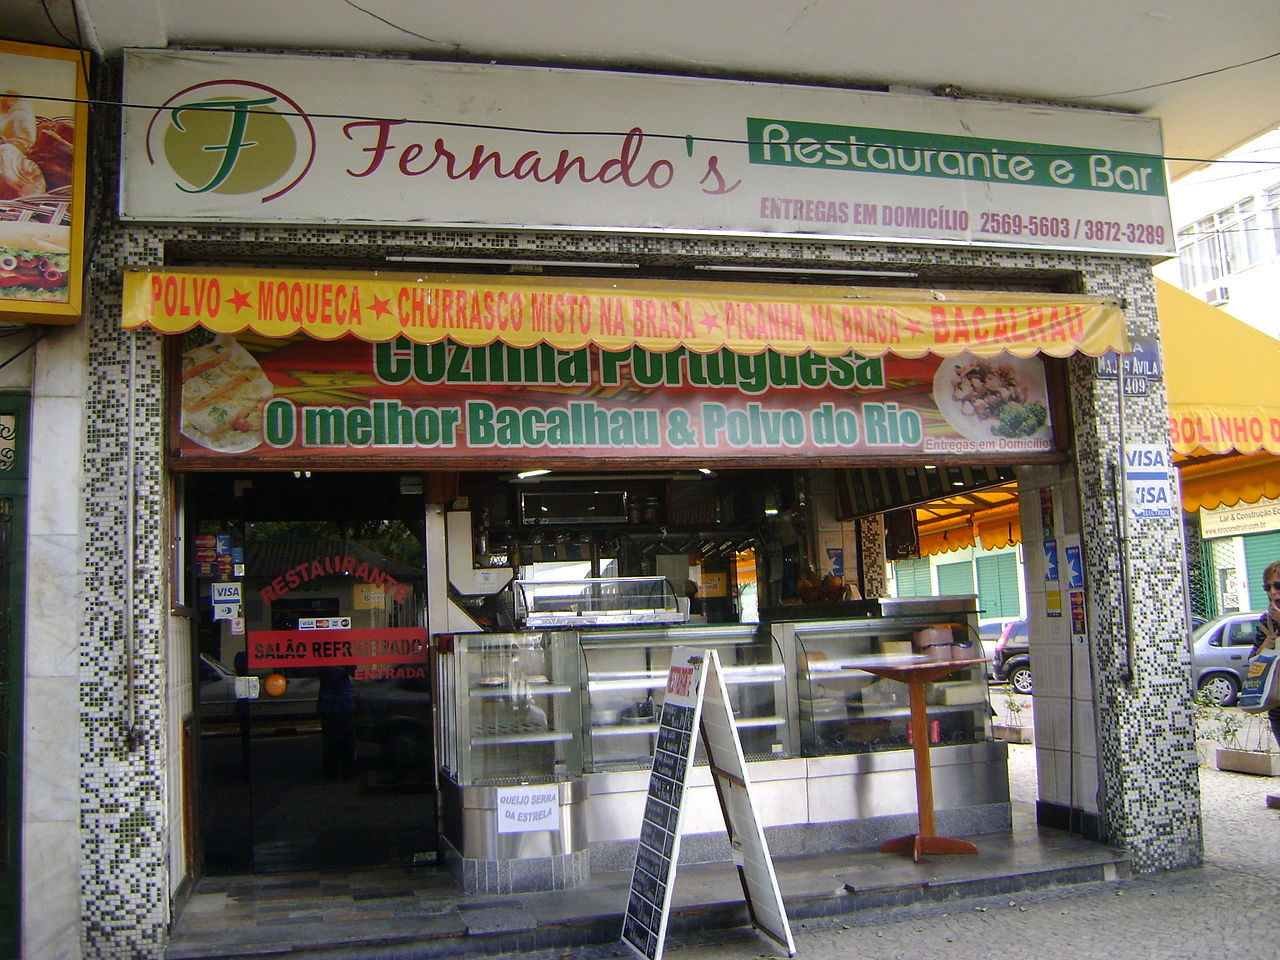 Fernando's Restaurante